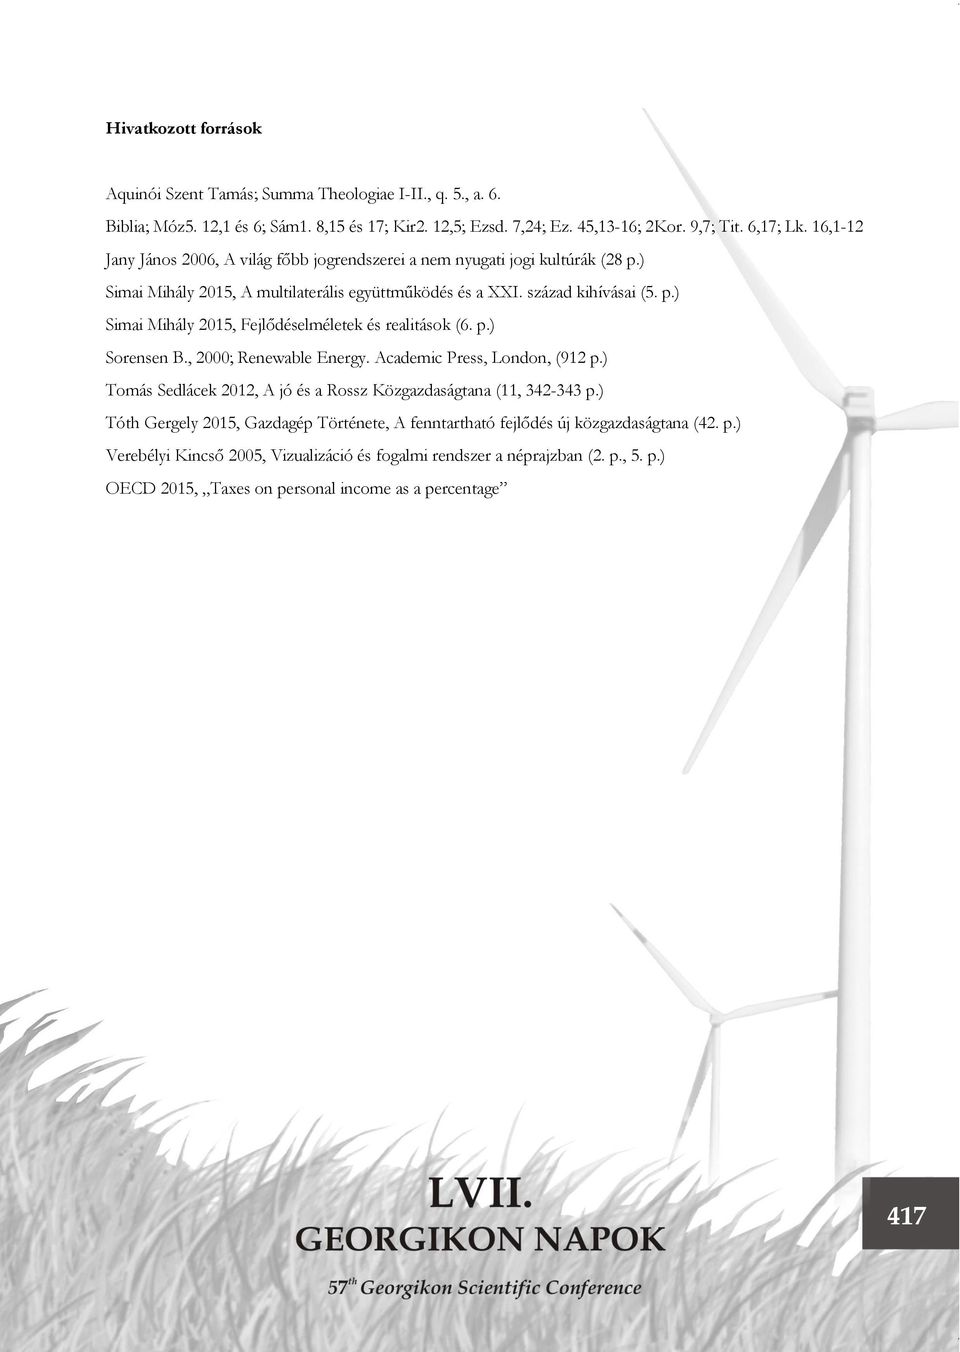 p.) Sorensen B., 2000; Renewable Energy. Academic Press, London, (912 p.) Tomás Sedlácek 2012, A jó és a Rossz Közgazdaságtana (11, 342-343 p.